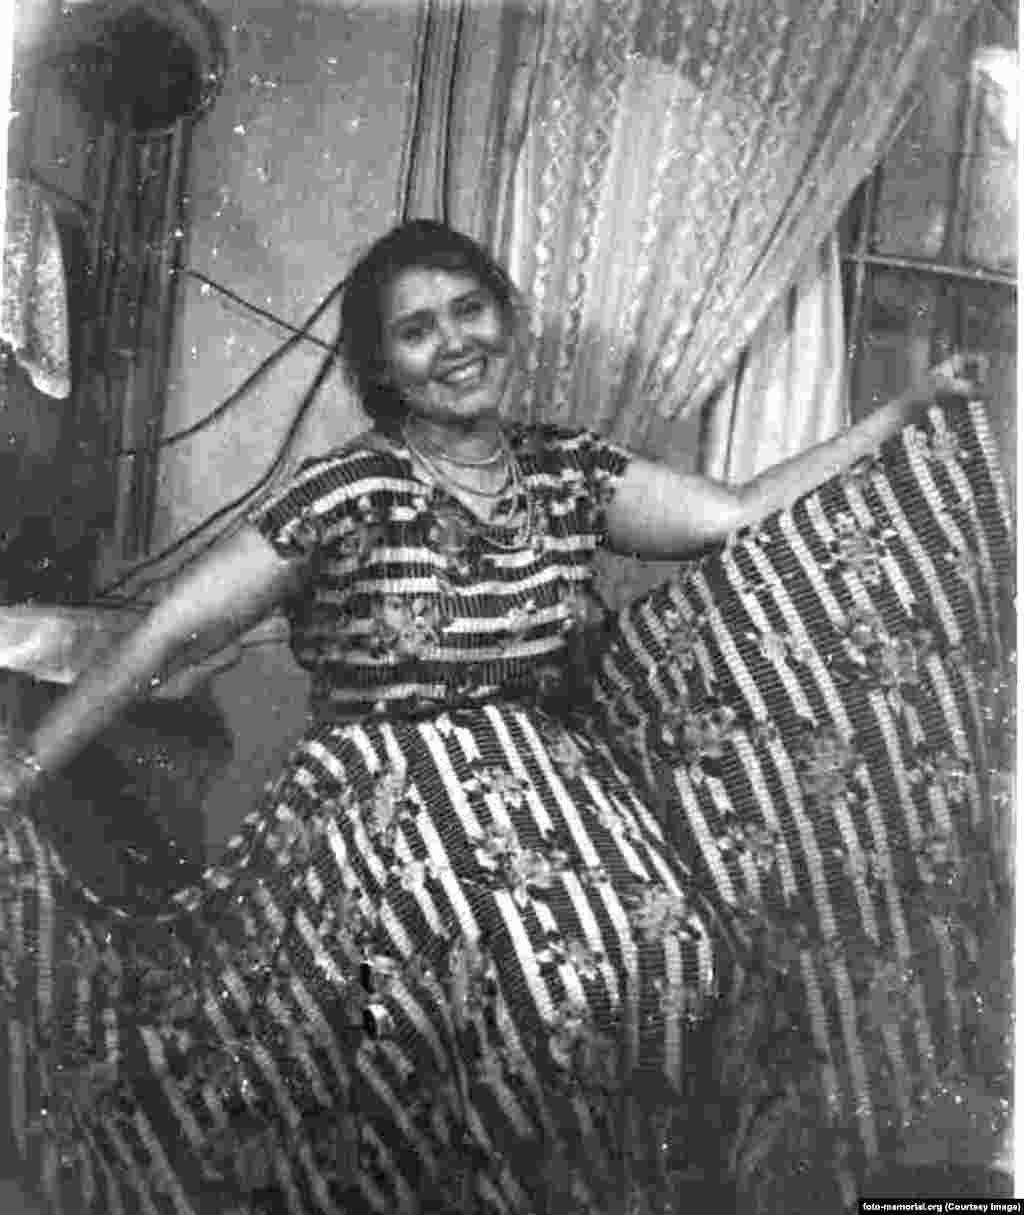 Јулија Одинцова со првиот фустан што го соши за себе, две години откако излезе од работен логор. Одинцова беше обвинета за &bdquo;антисоветска пропаганда и агитација&ldquo; и преживеала осум години во различни логори за принудна работа во Сибир пред да биде ослободена во 1952 година.